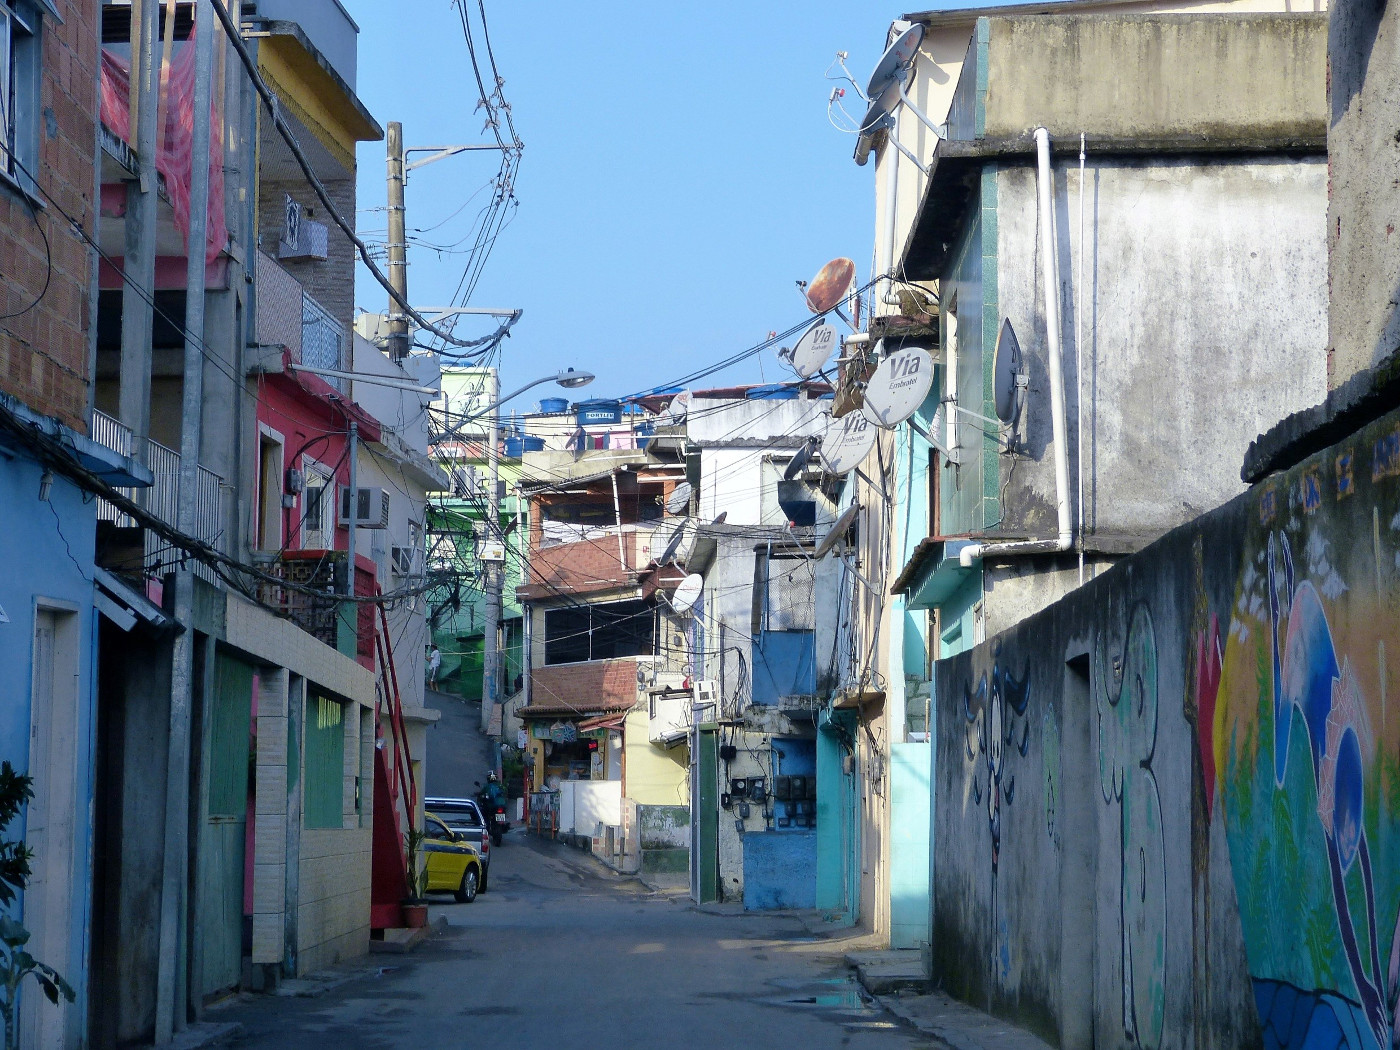 Viele Favelas in Rio de Janeiro werden von kriminellen Banden kontrolliert. Symbolbild (Favela Vidigal): Adveniat/Christina Weise